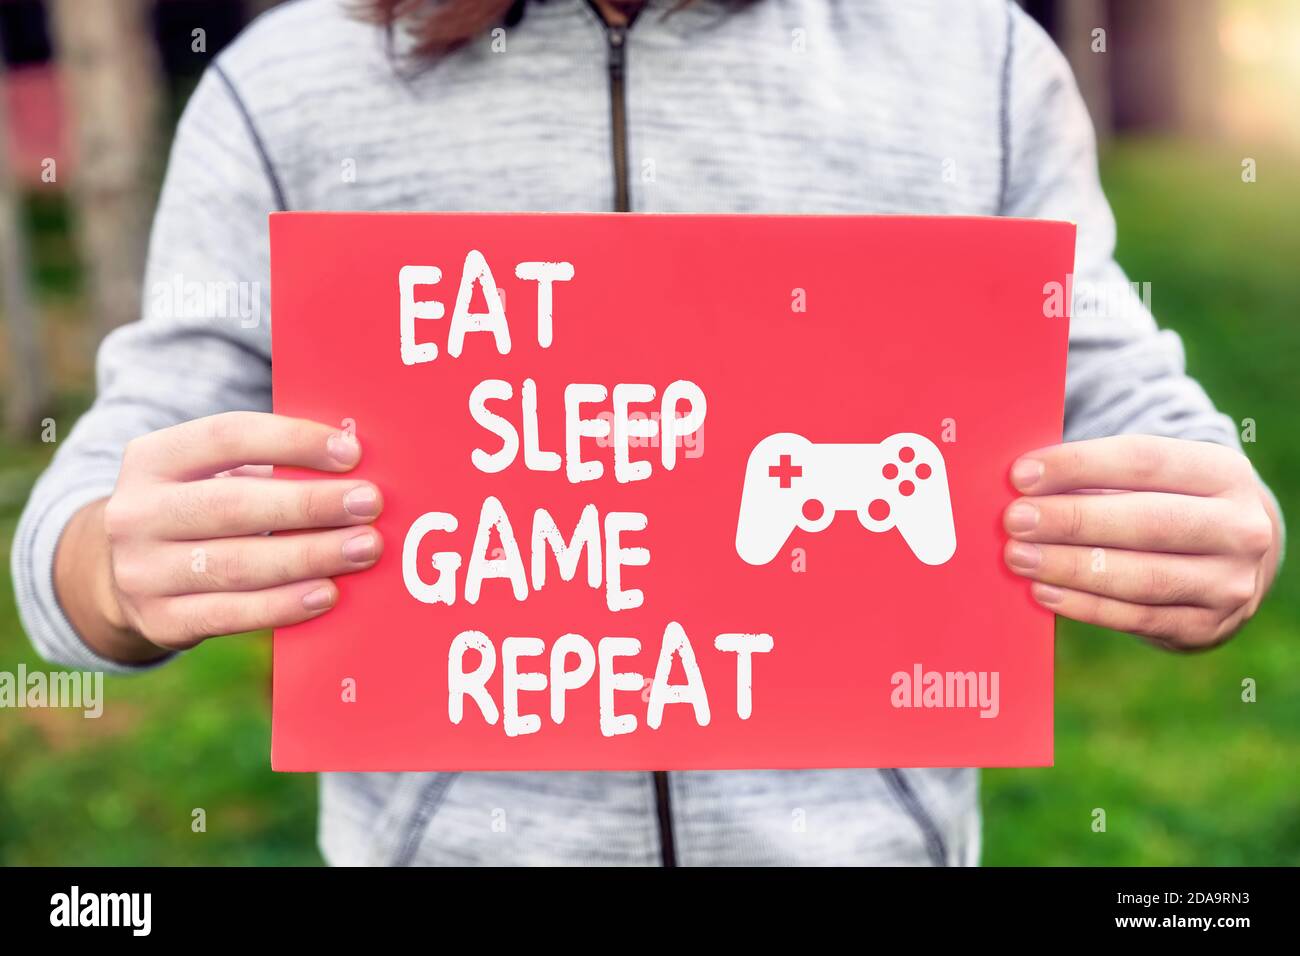 Un gamer d'adolescent de sexe masculin tient une bannière avec un message de citation de type Eat, Sleep, Game, Repeat avec un symbole de manette de jeu. Addiction de jeu ou concept de dépendance. Banque D'Images